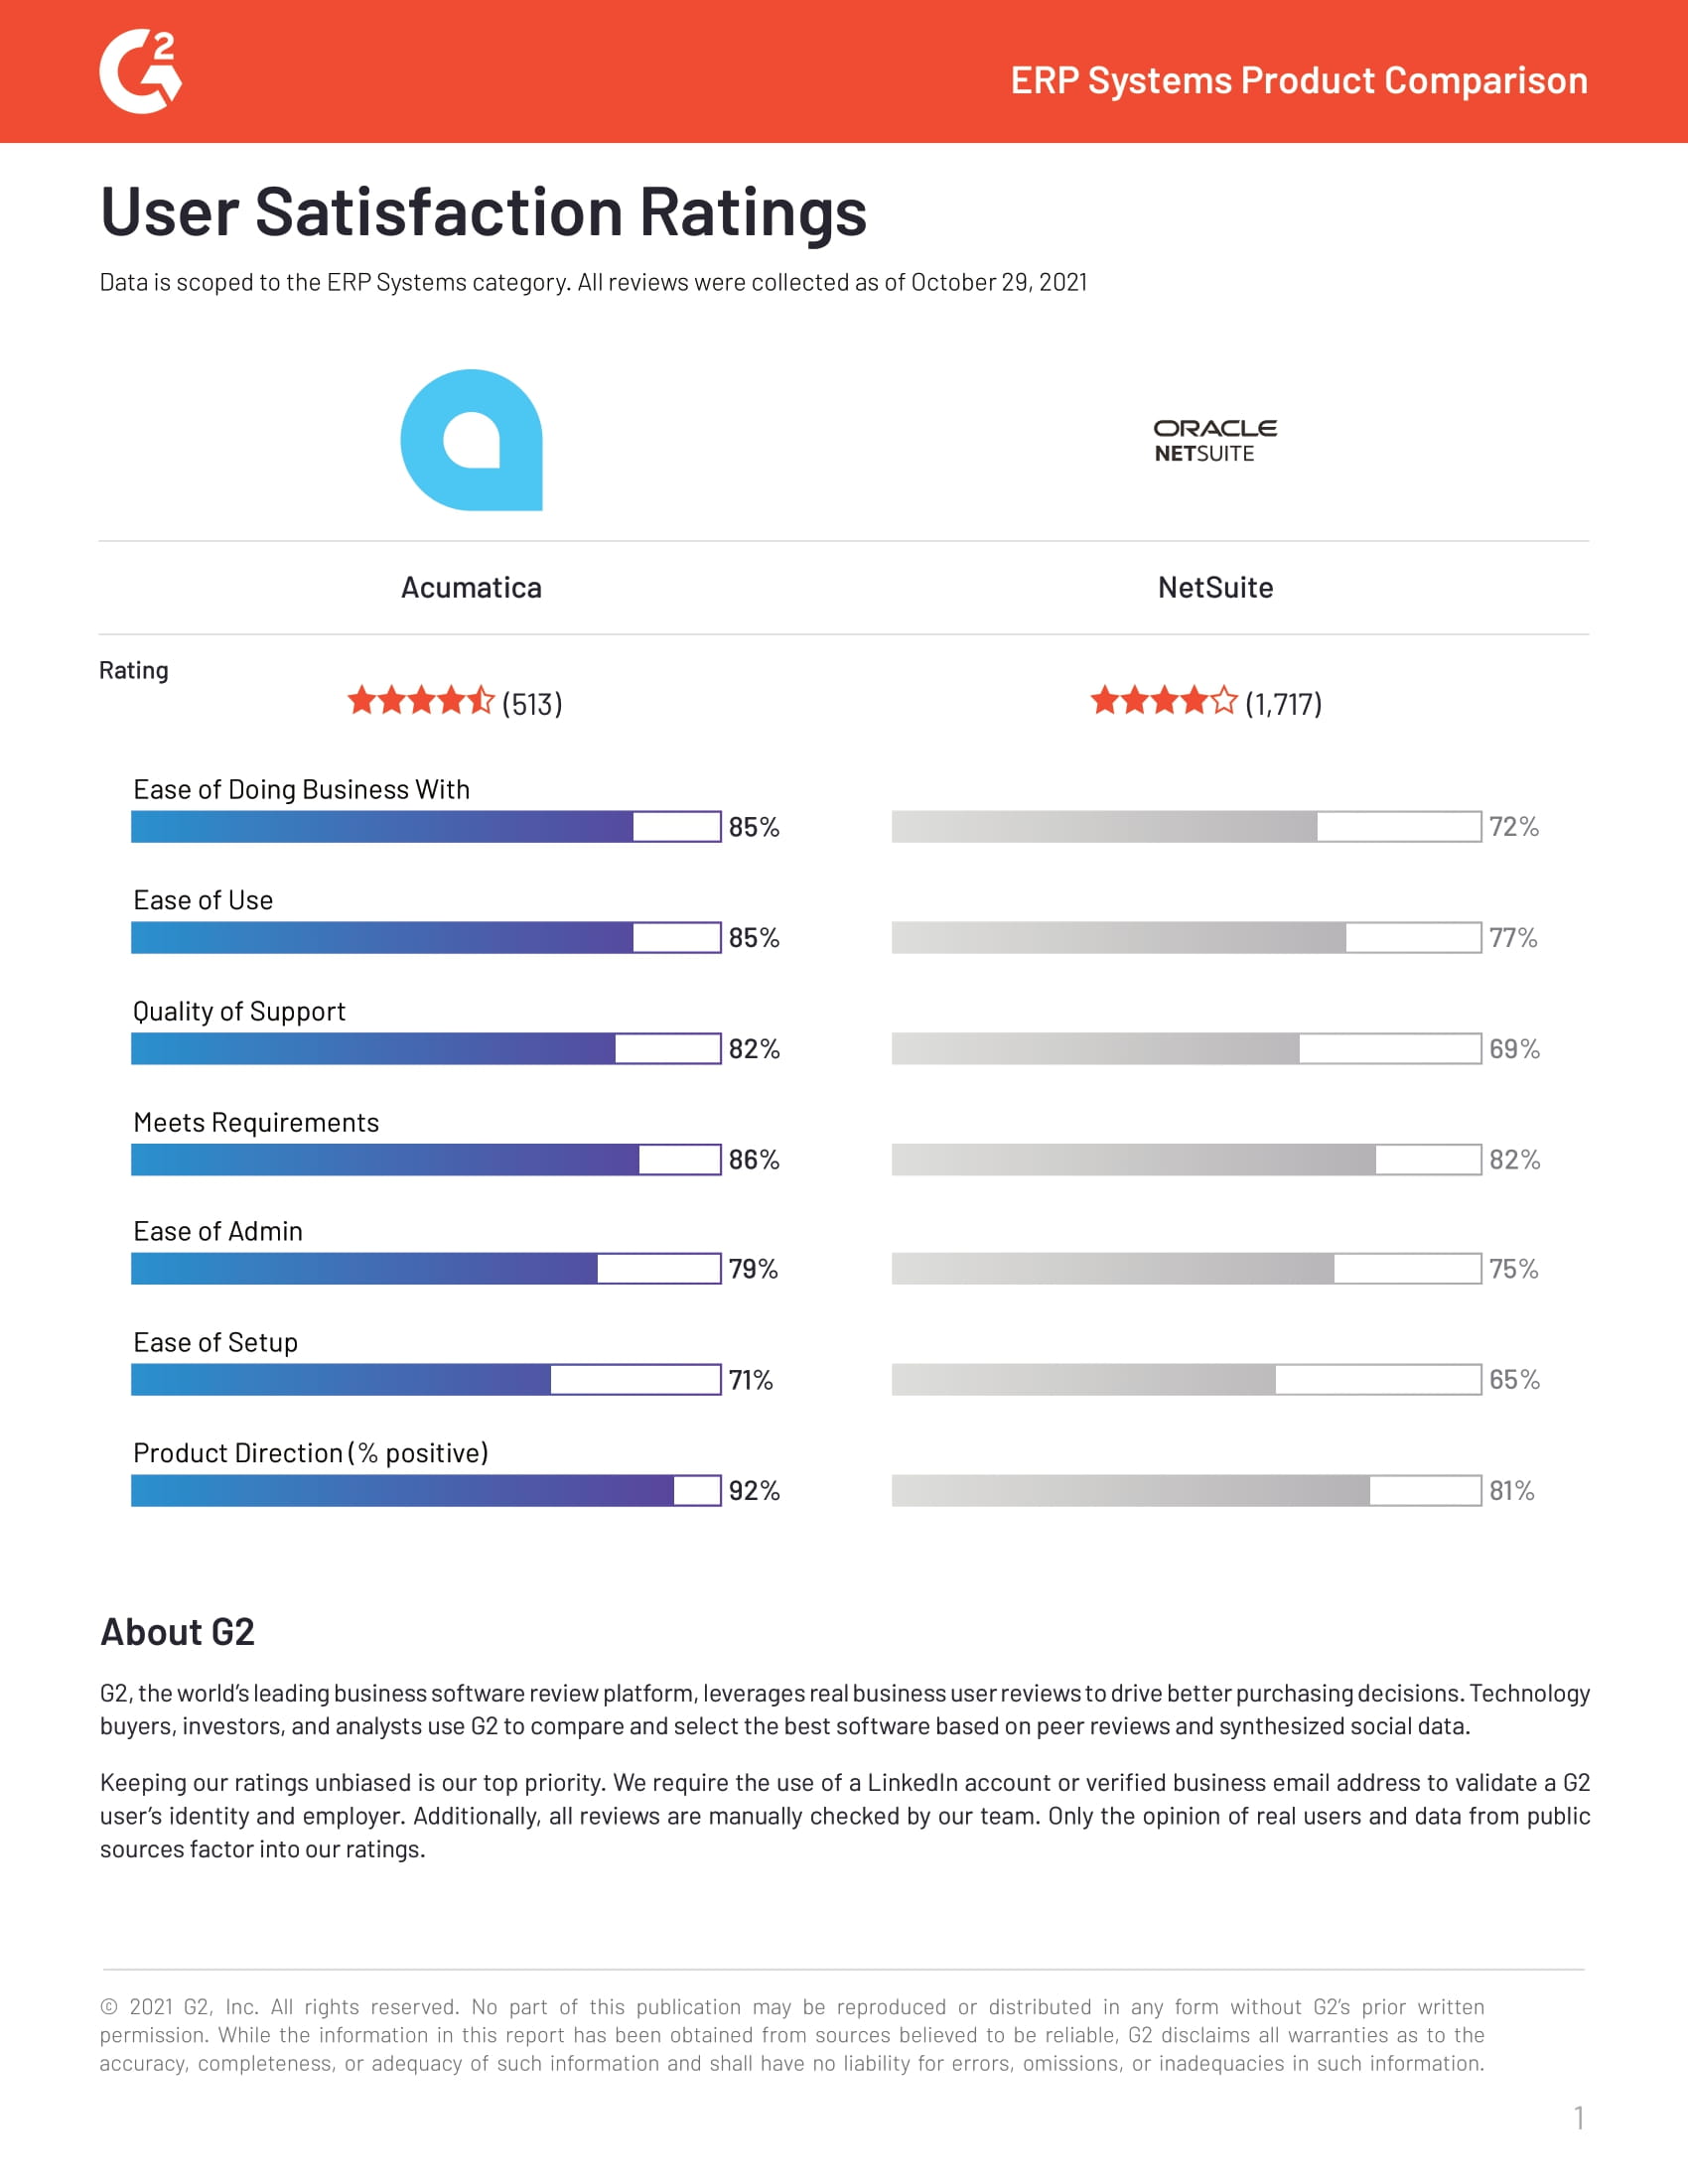 G2Crowd User Satisfaction Ratings 2021 (Oracle NetSuite)